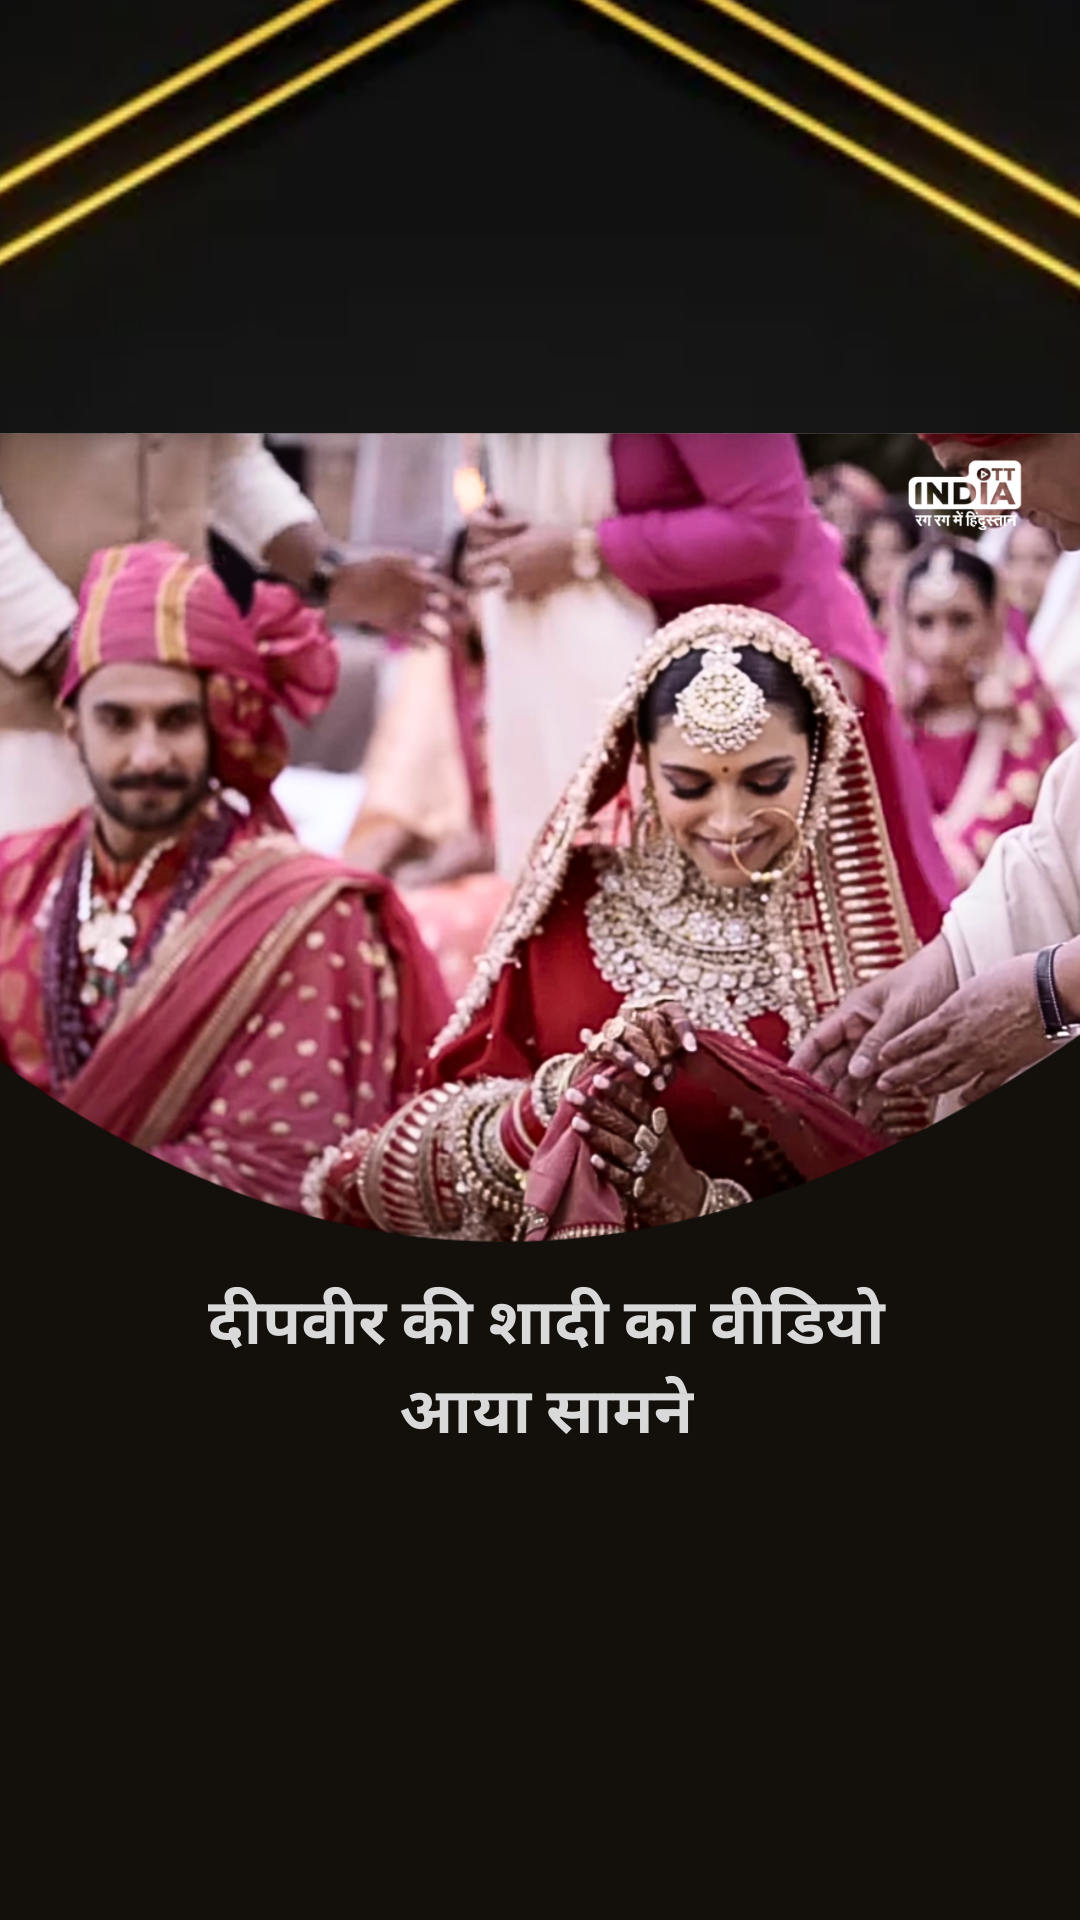 Deepika Ranveer Wedding Video: दीपवीर की शादी का वीडियो आया सामने, एंगेजमेंट पार्टी में दीपिका को देखते हुए नजर आ रहे रणवीर